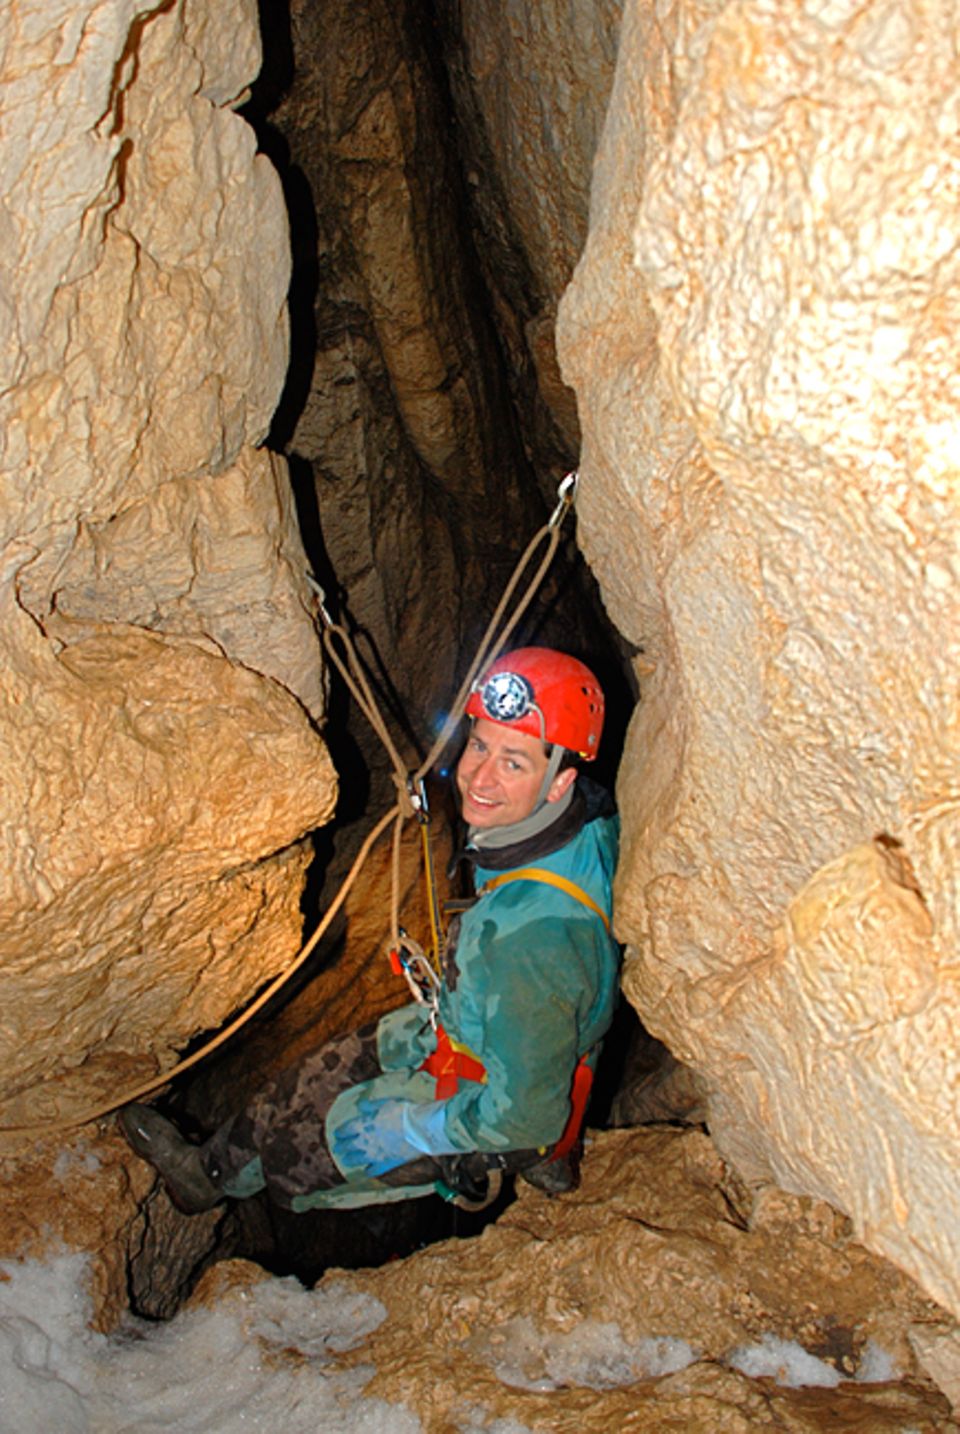 Höhlendrama: Lars Abromeit auf dem mühsamen Weg in die Tiefe des weit verzweigten Höhlensystems